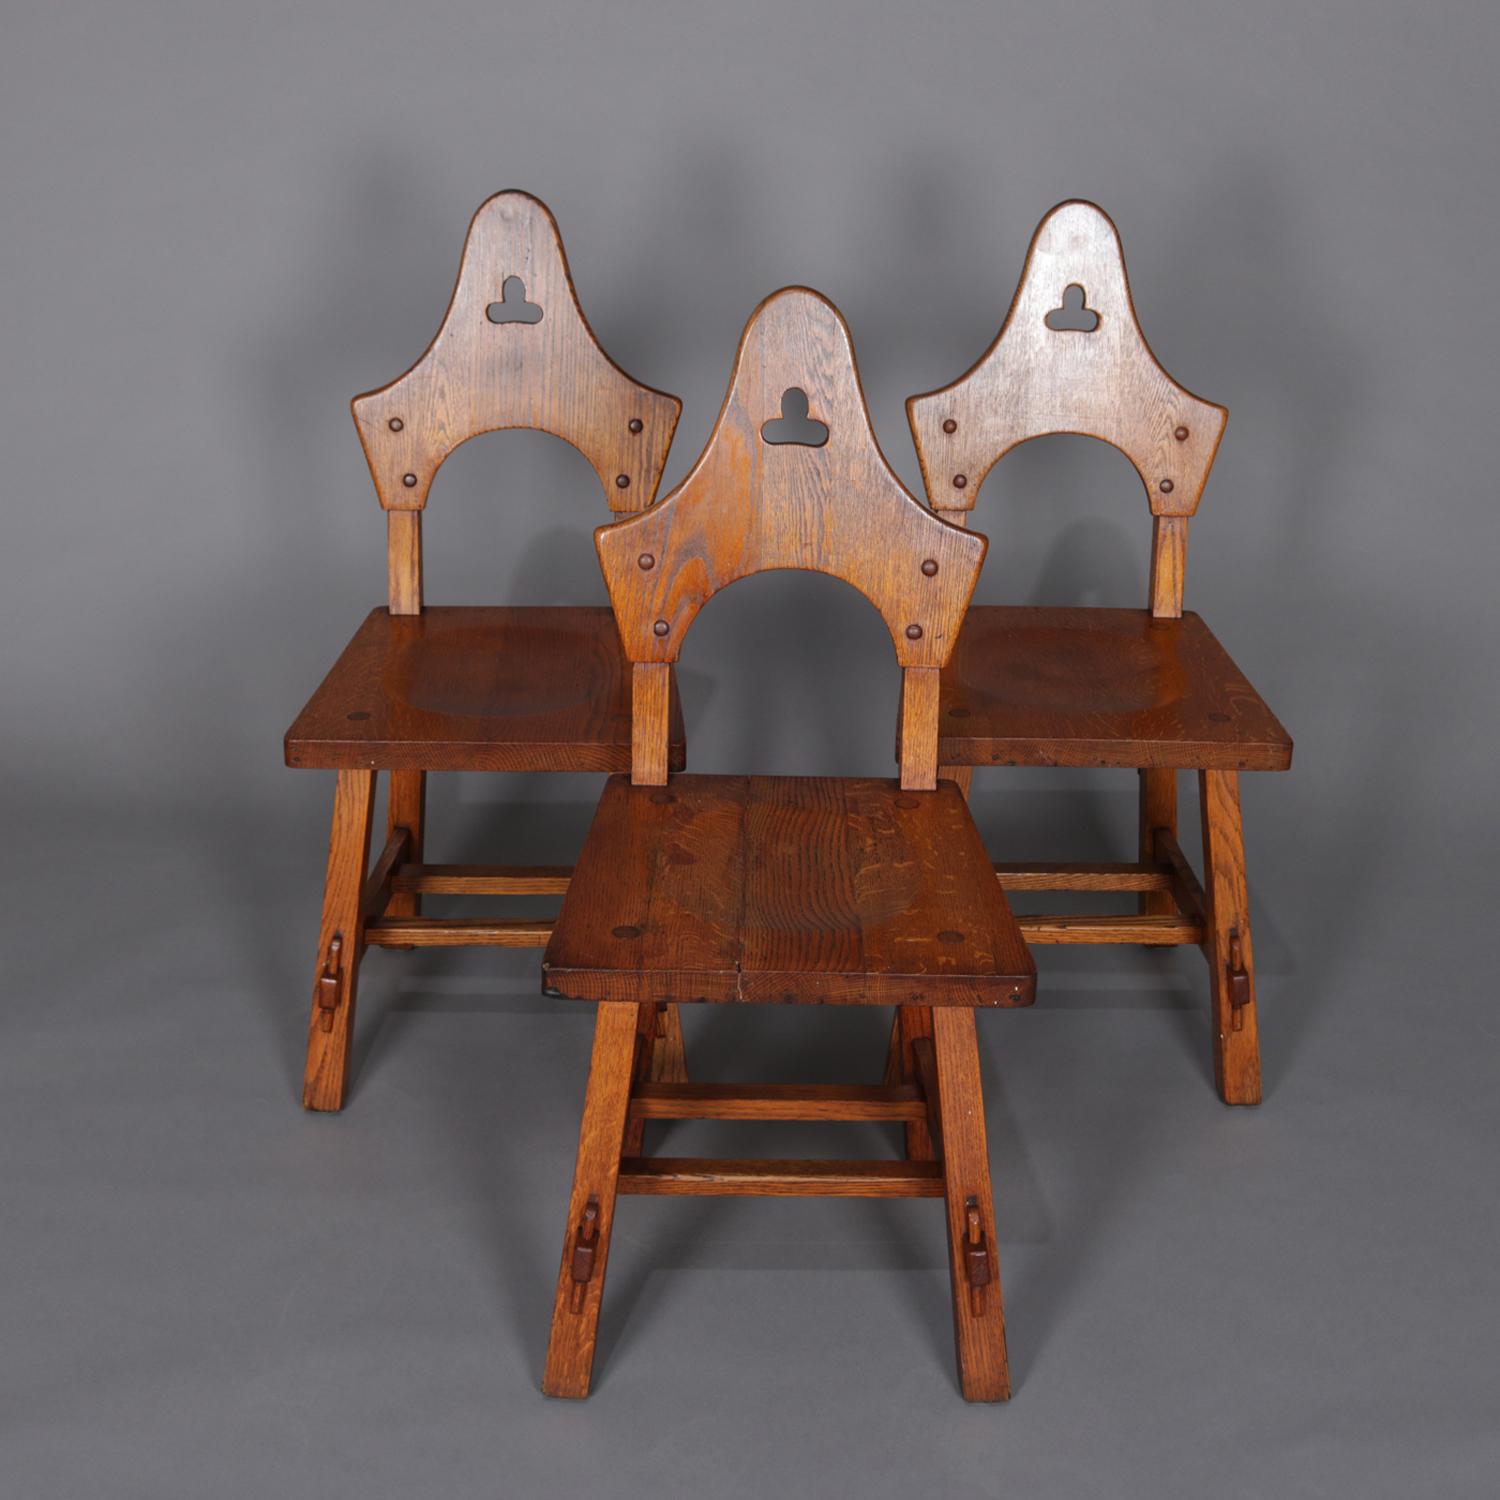 Satz von 3 Arts & Crafts Mission Eiche Esszimmerstühle von Limbert verfügen über geformte Rückenlehnen mit ausgeschnittenen stilisierten Kleeblättern:: um 1910

Maßnahmen: 36